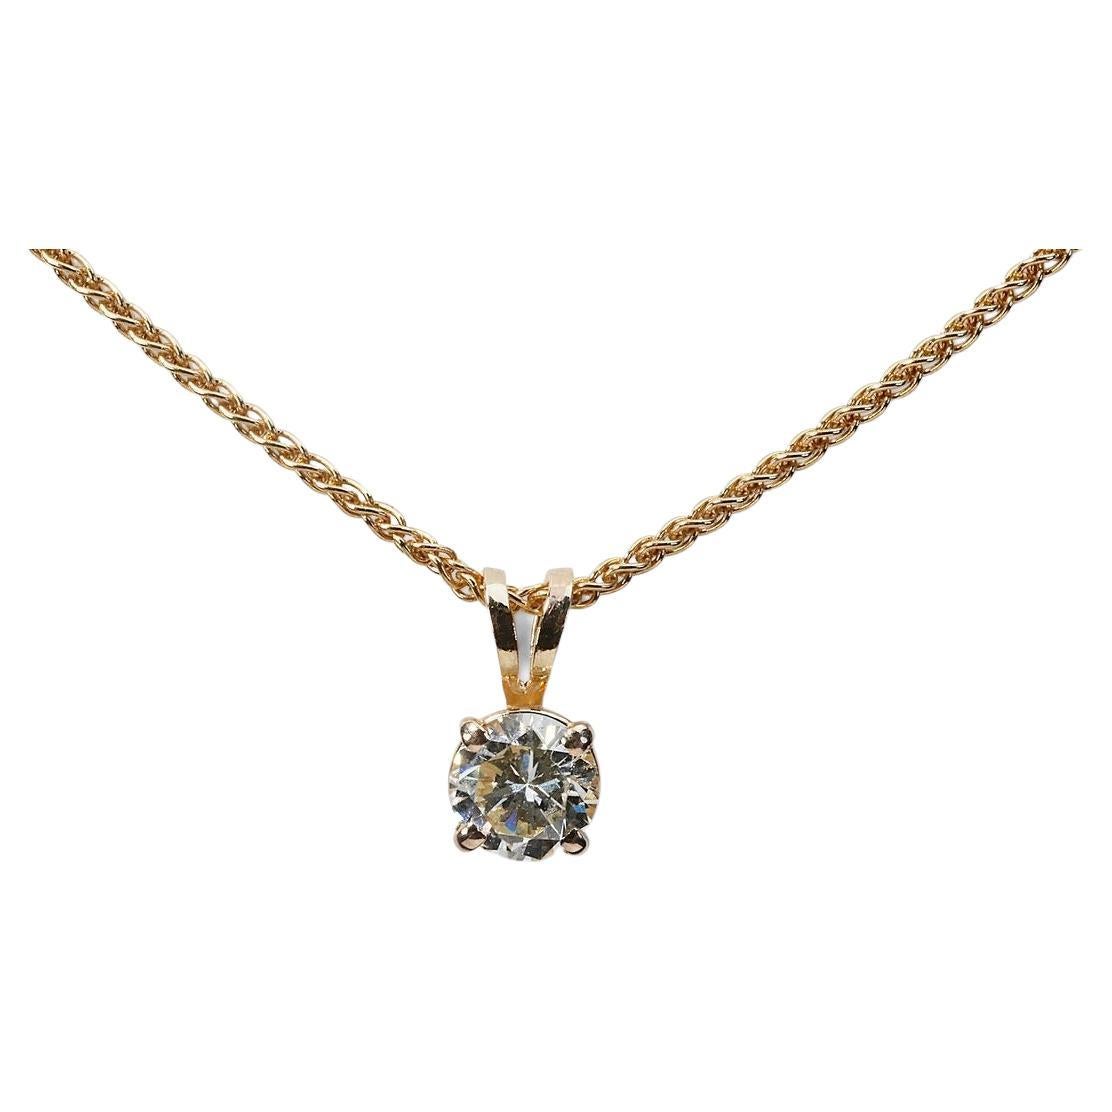 Superbe collier solitaire en or jaune 18 carats avec diamants naturels de 0,9 carat certifiés GIA